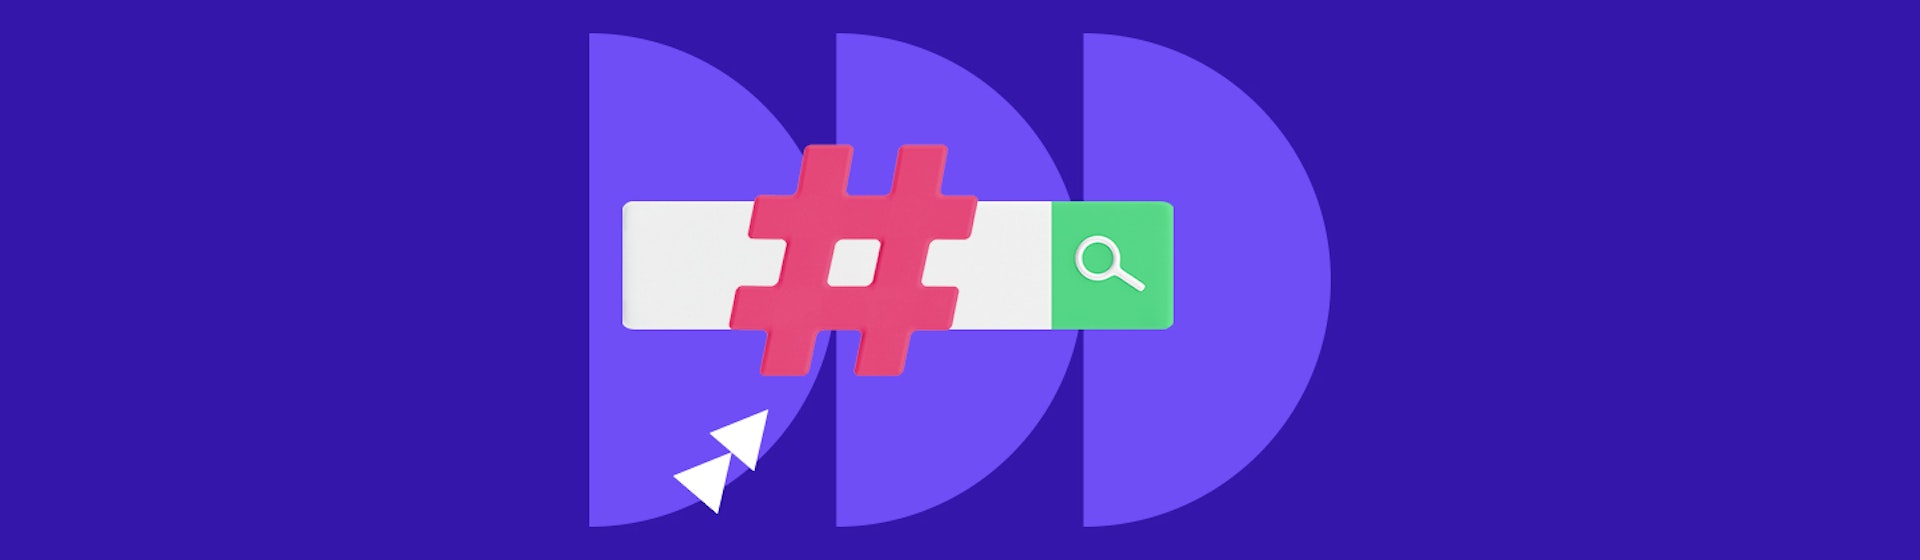 Aprende cómo crear un hashtag y lleva a tu negocio a ser tendencia en redes sociales